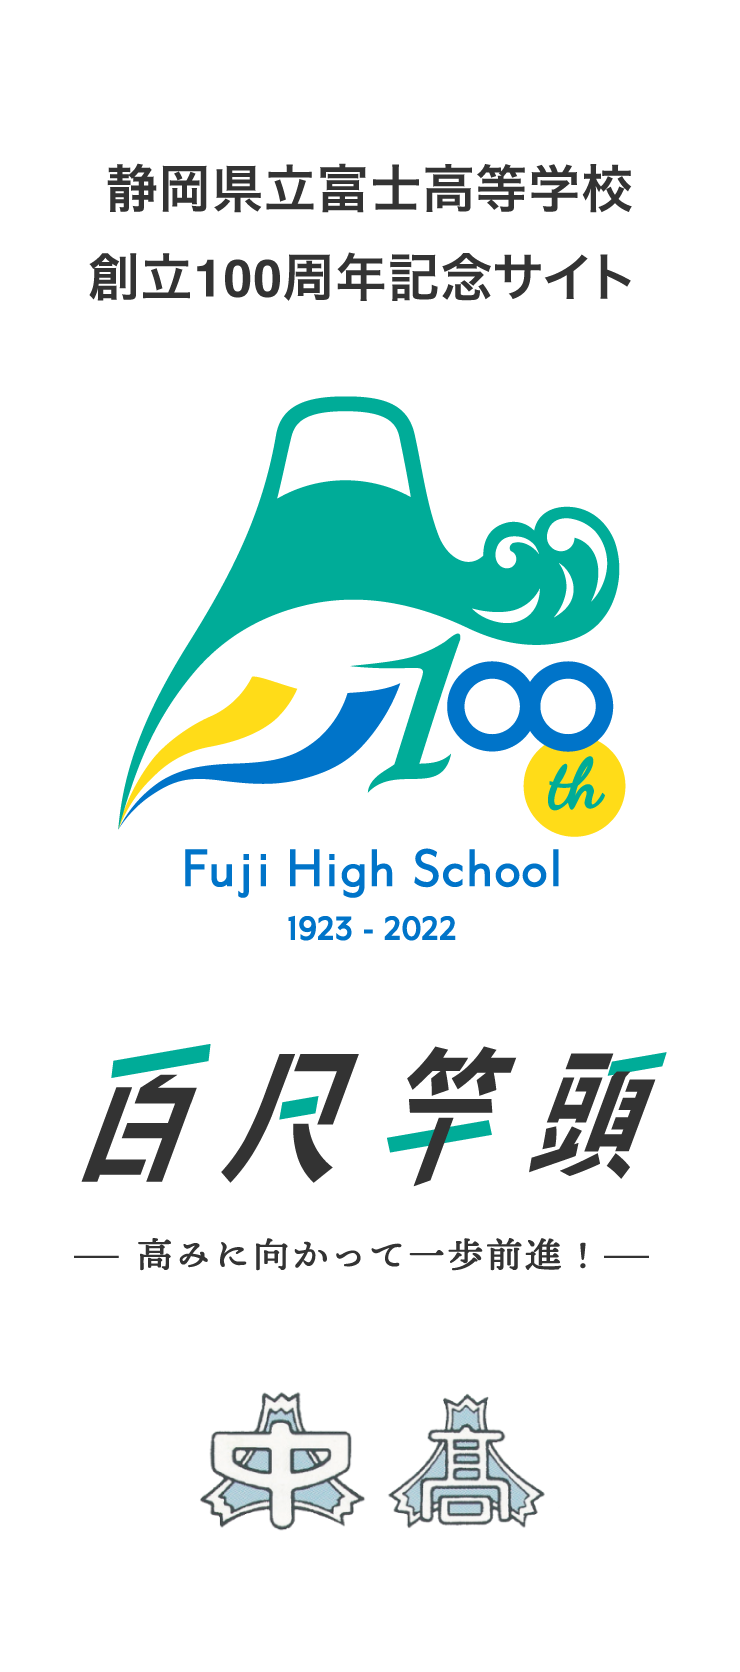 静岡県立富士高等学校 創立100周年記念サイト